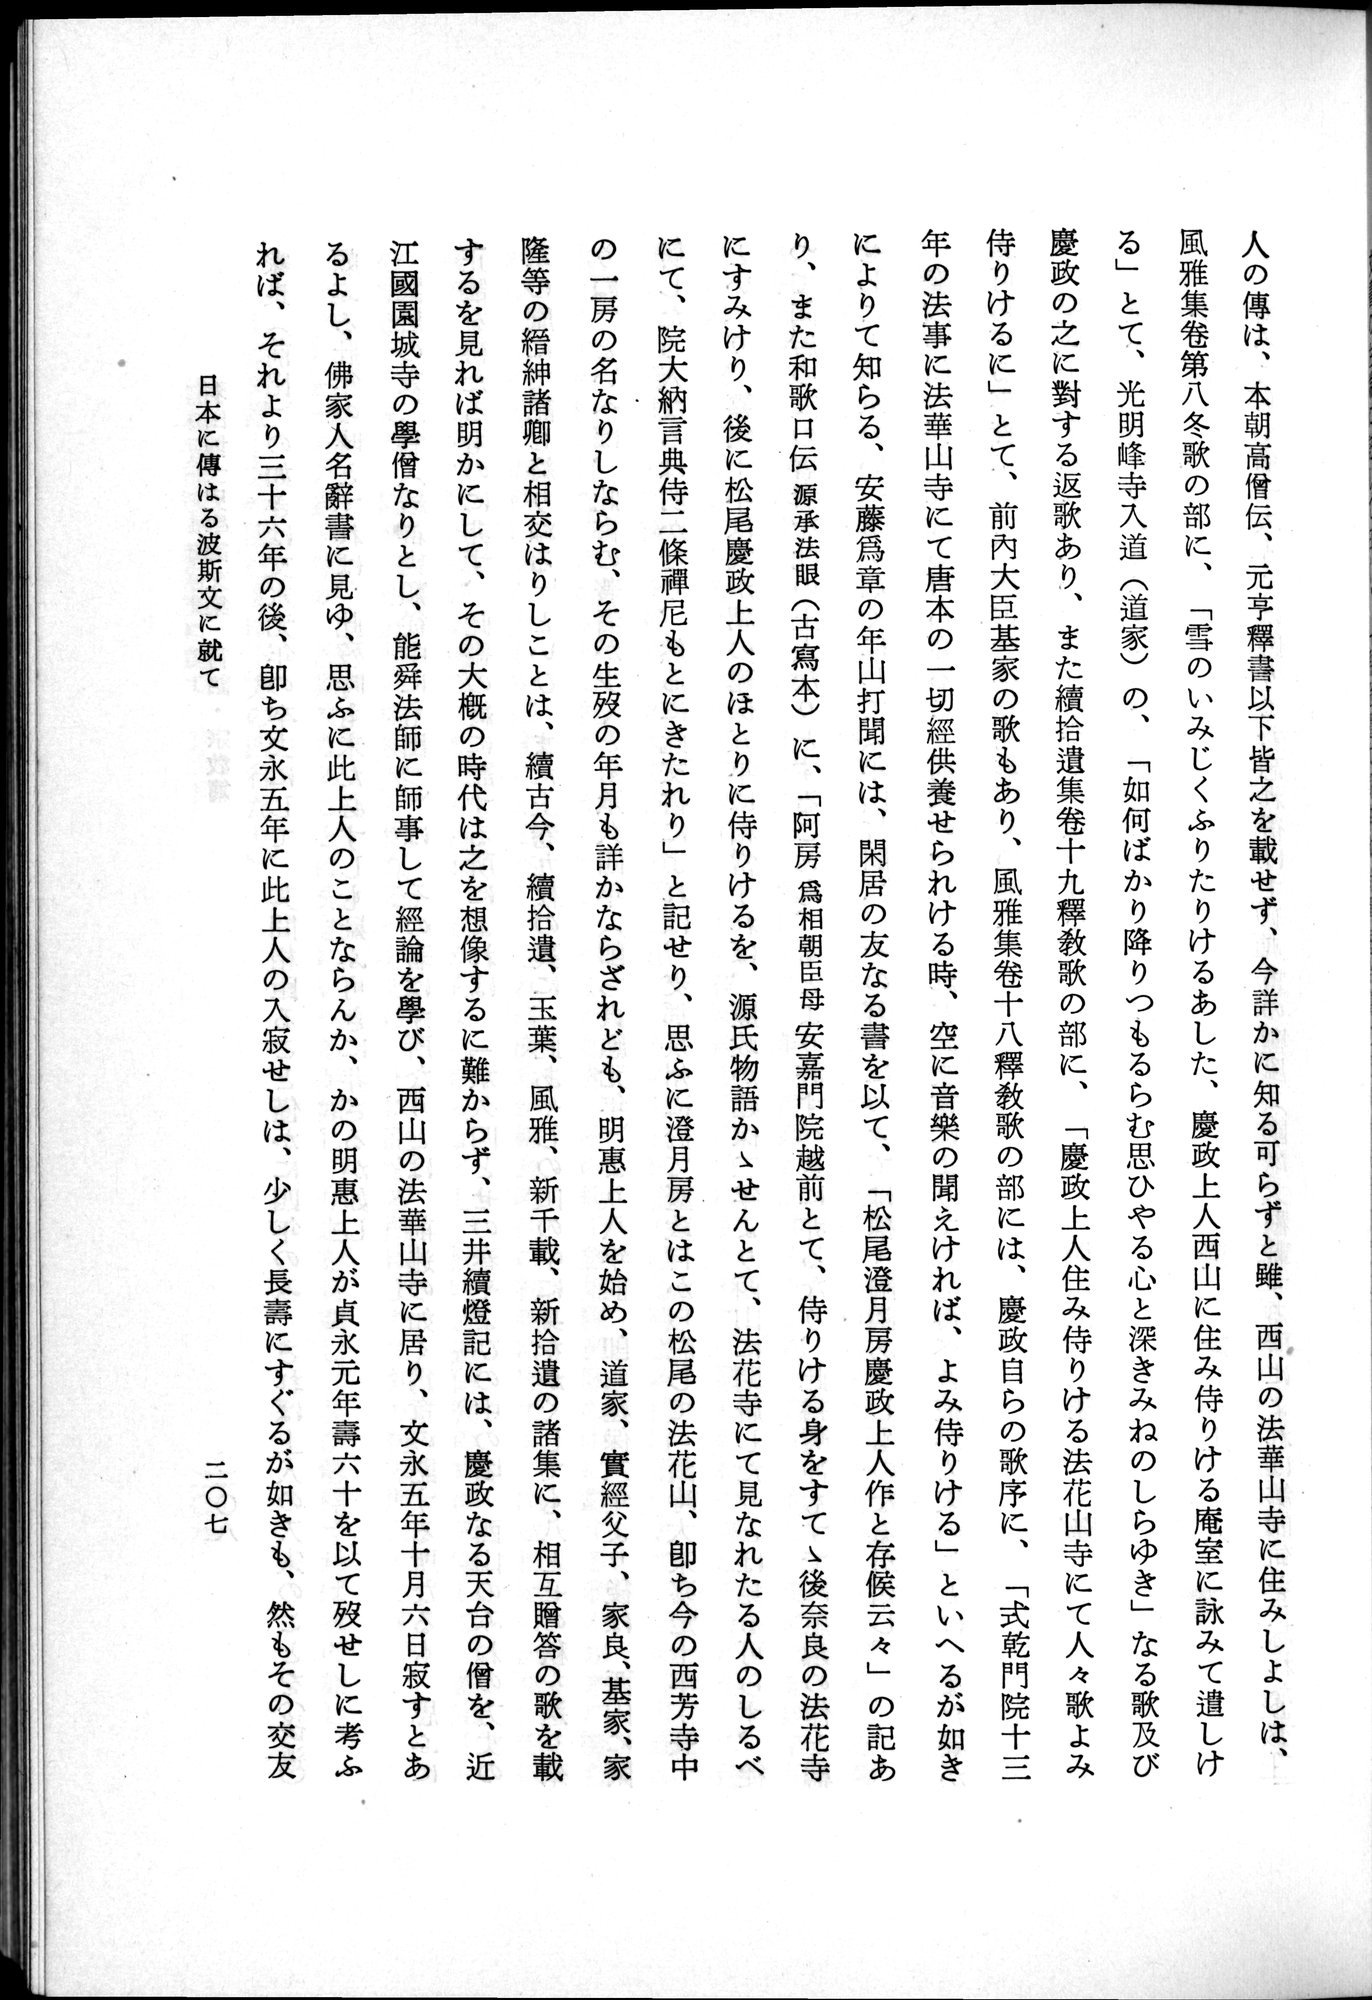 羽田博士史学論文集 : vol.2 / Page 269 (Grayscale High Resolution Image)